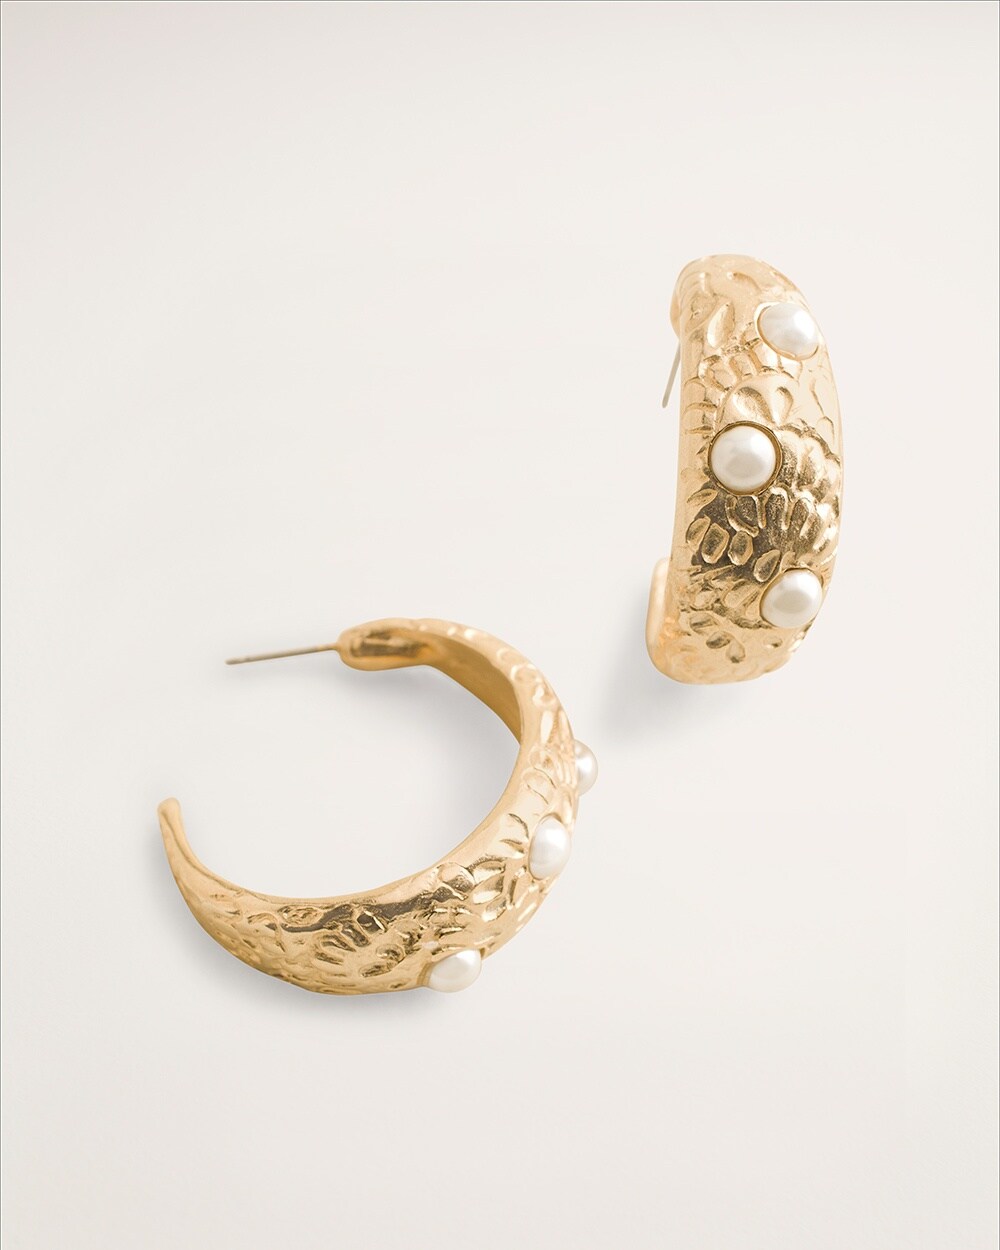 Goldtone Textured Hoop Earrings with Faux Pearls